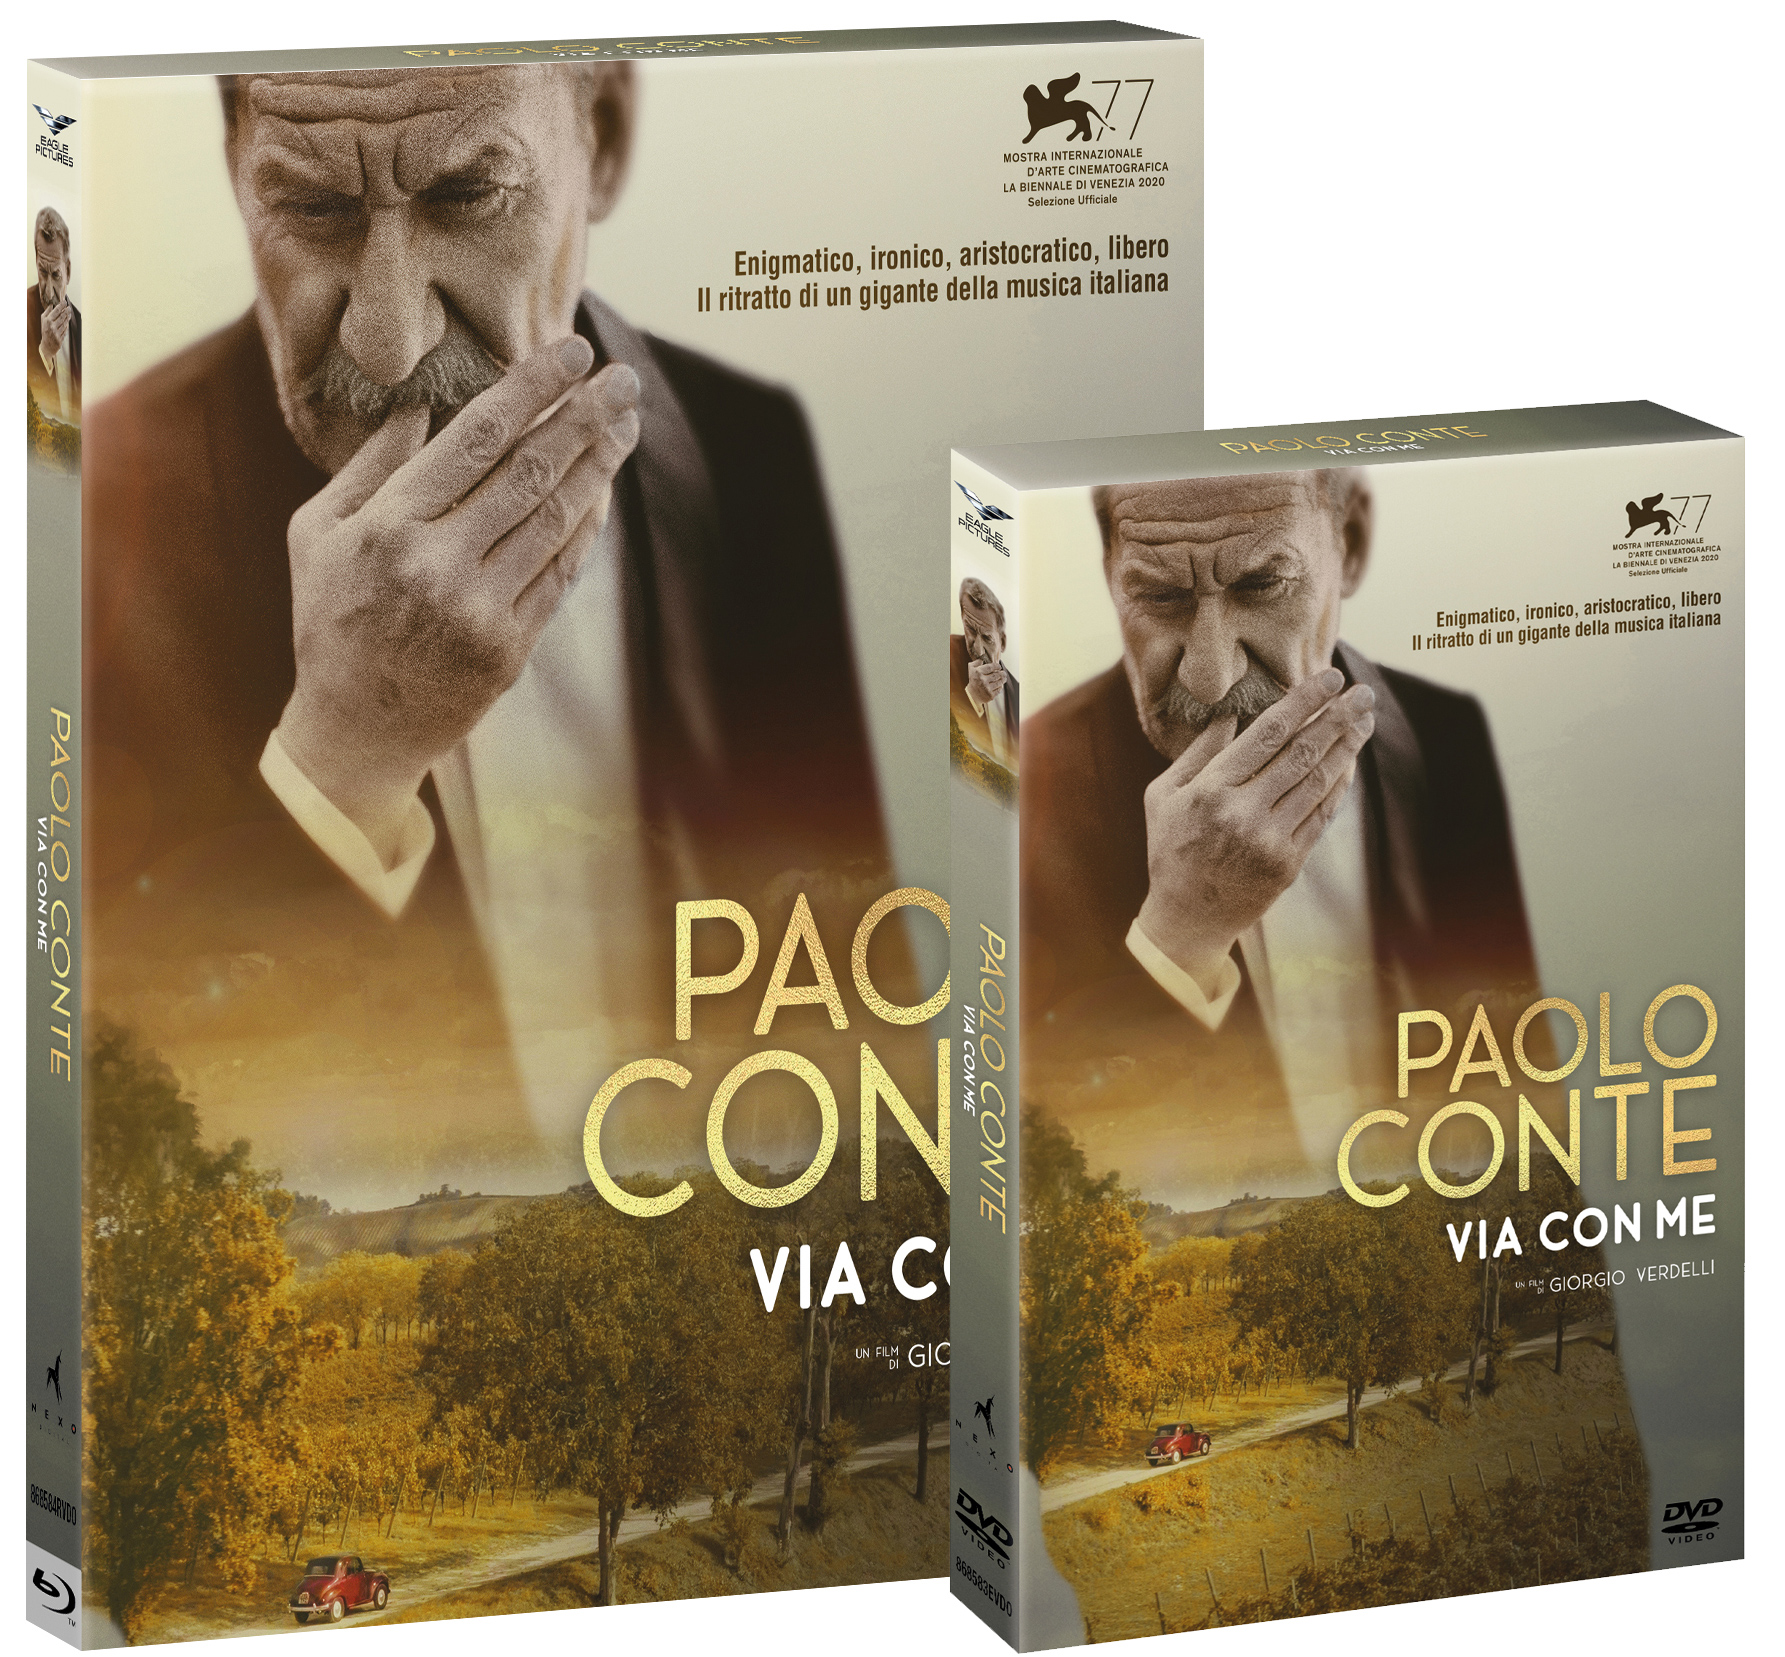 Paolo Conte, vieni via con me in DVD e Blu-ray